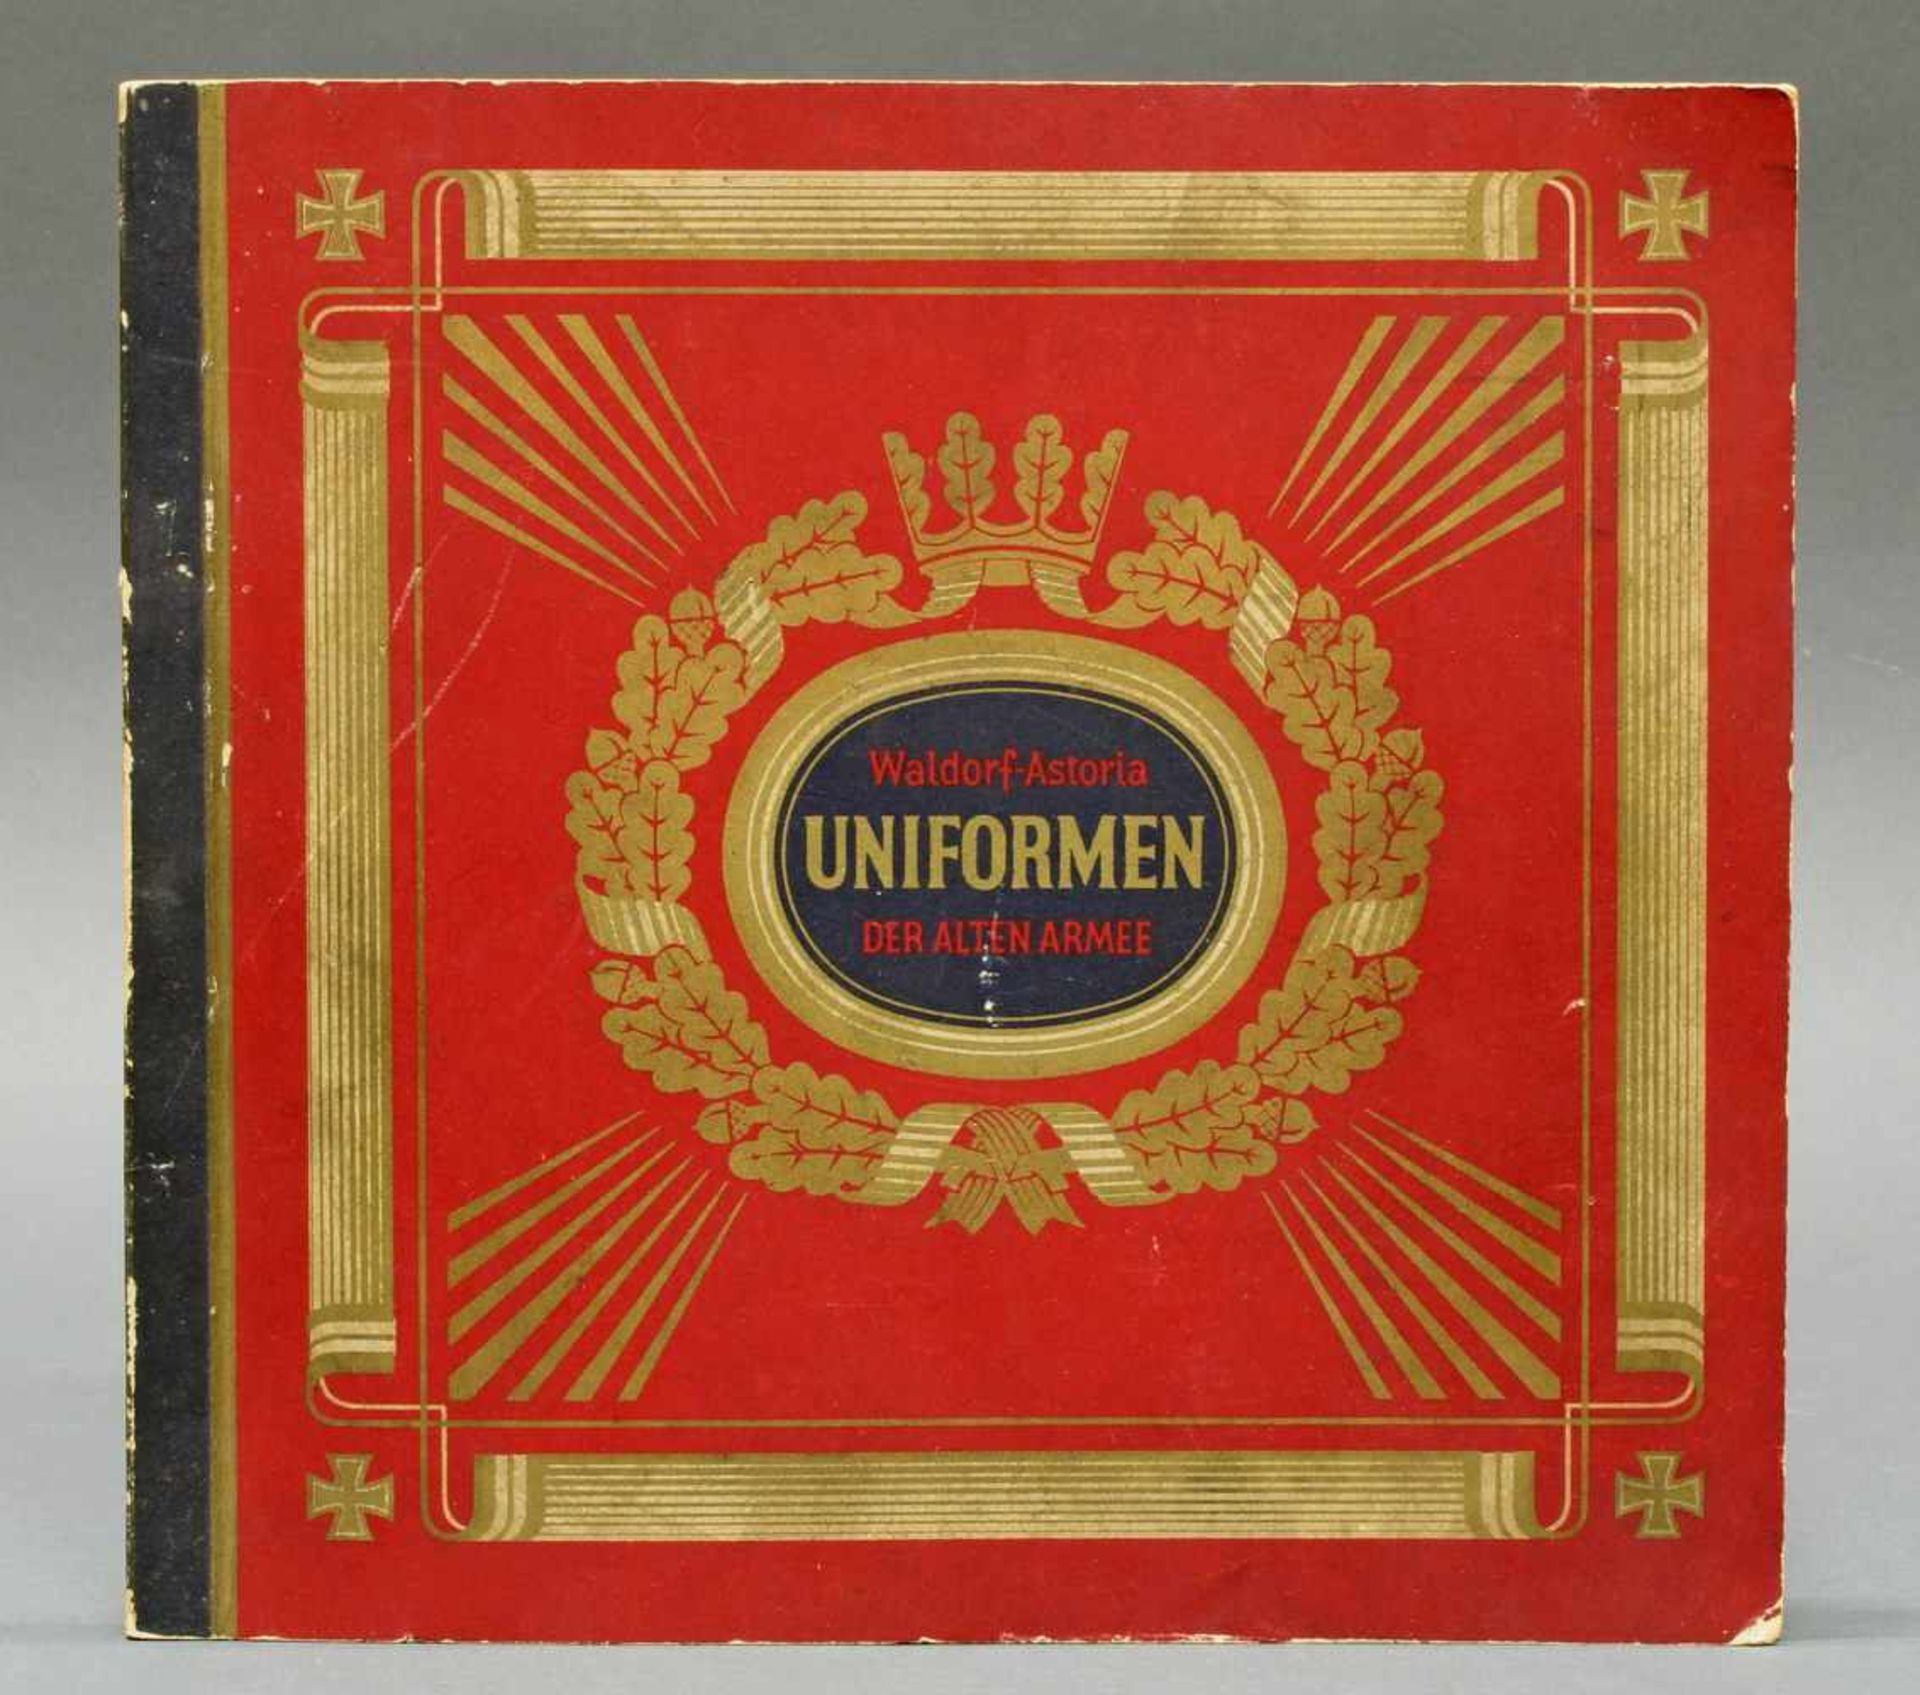 Zigarettenalbum, "Uniformen der alten Armee", Waldorf Astoria, vollständig- - -25.00 % buyer's - Bild 2 aus 4